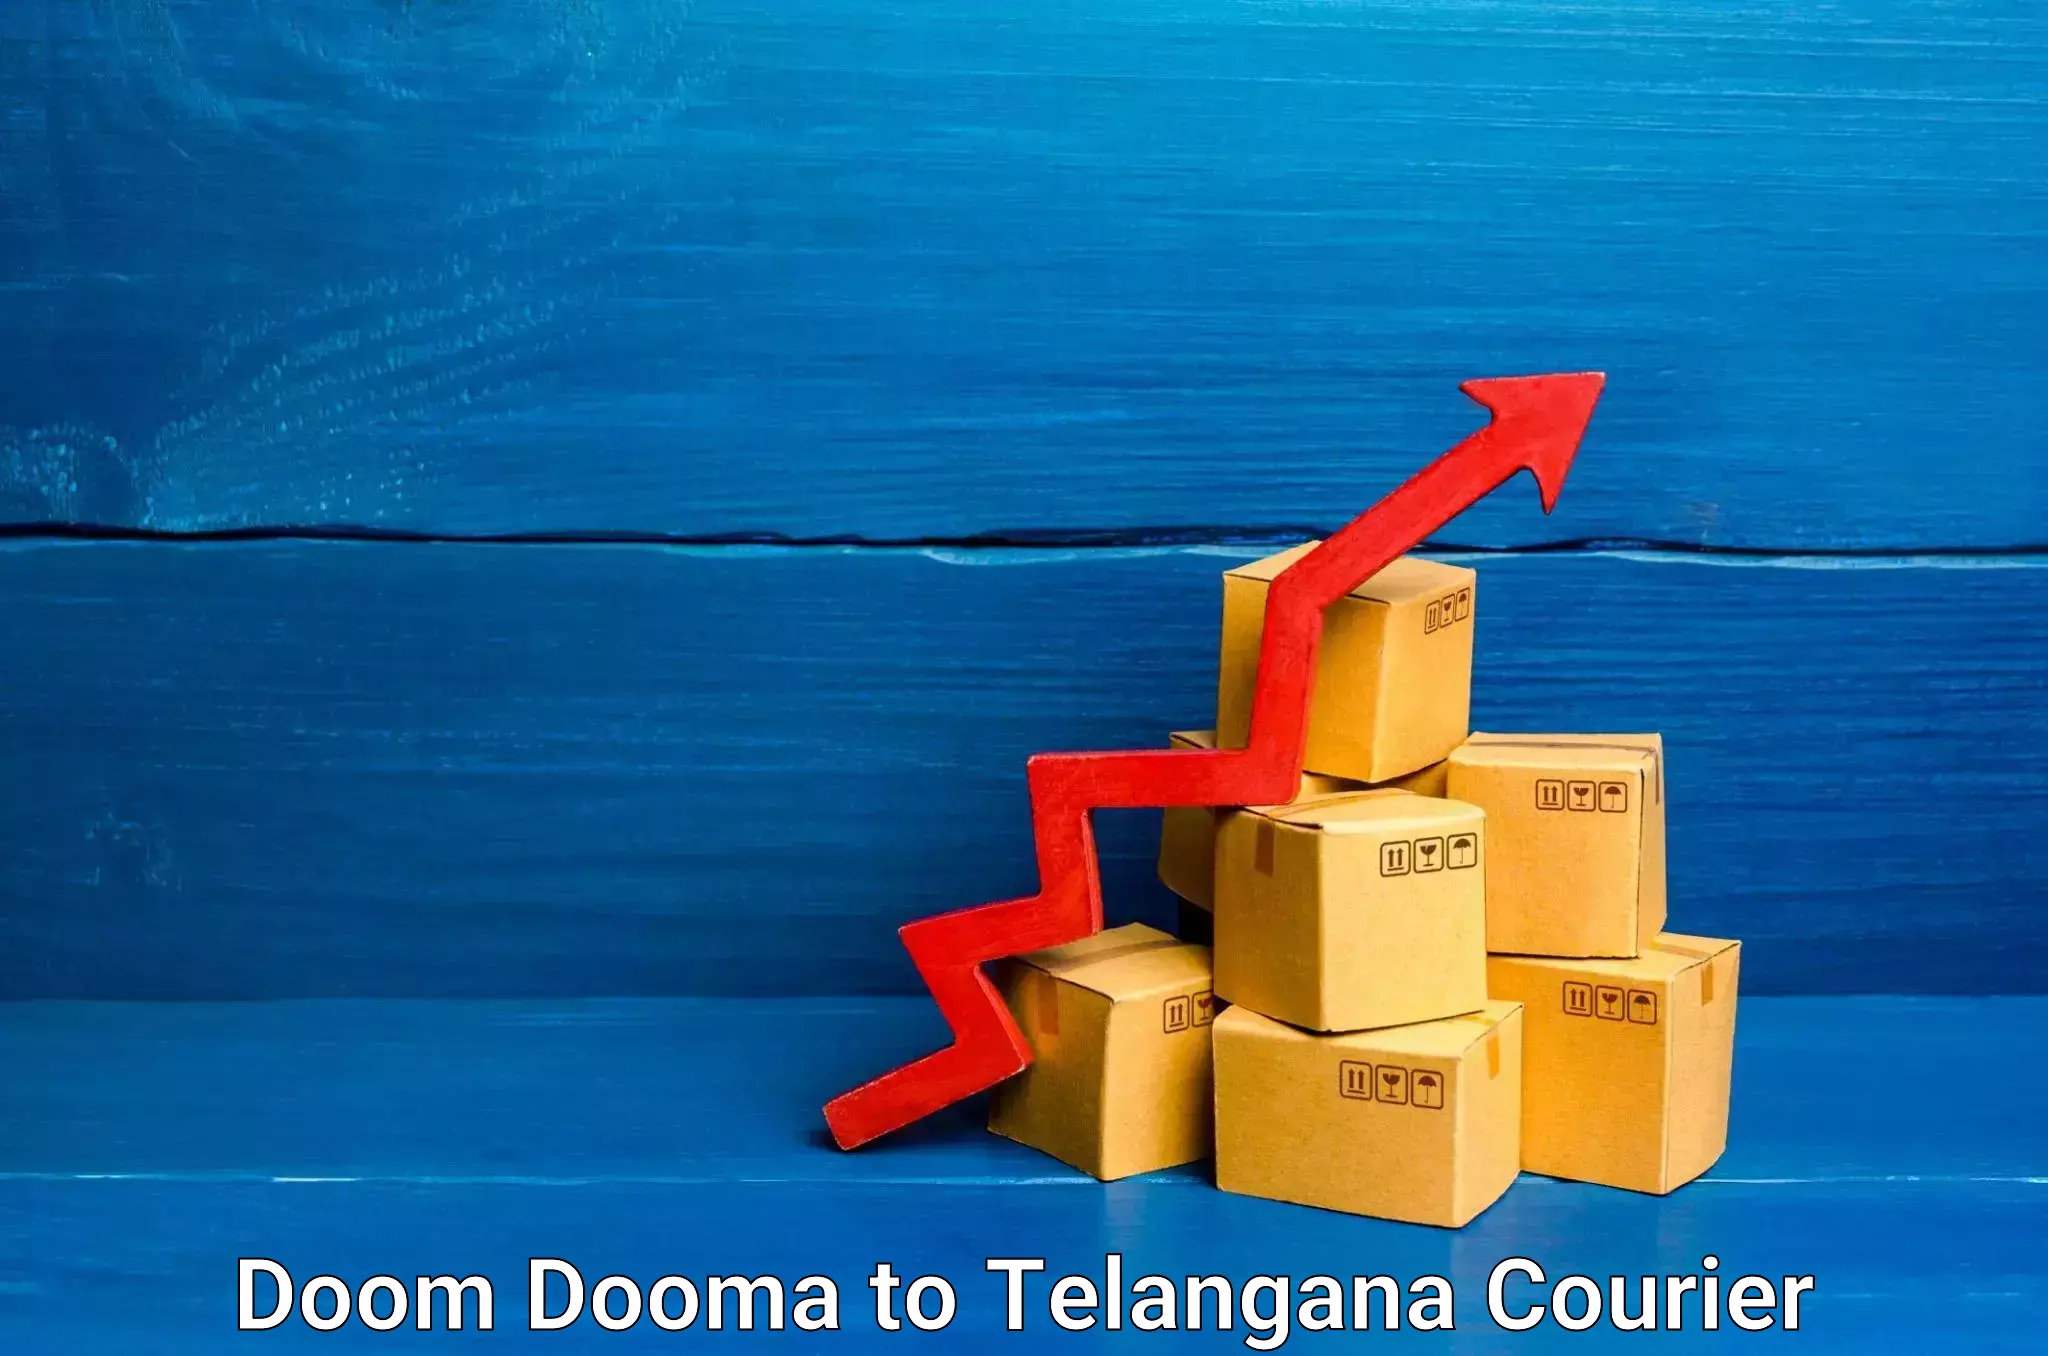 24-hour courier service Doom Dooma to Khammam